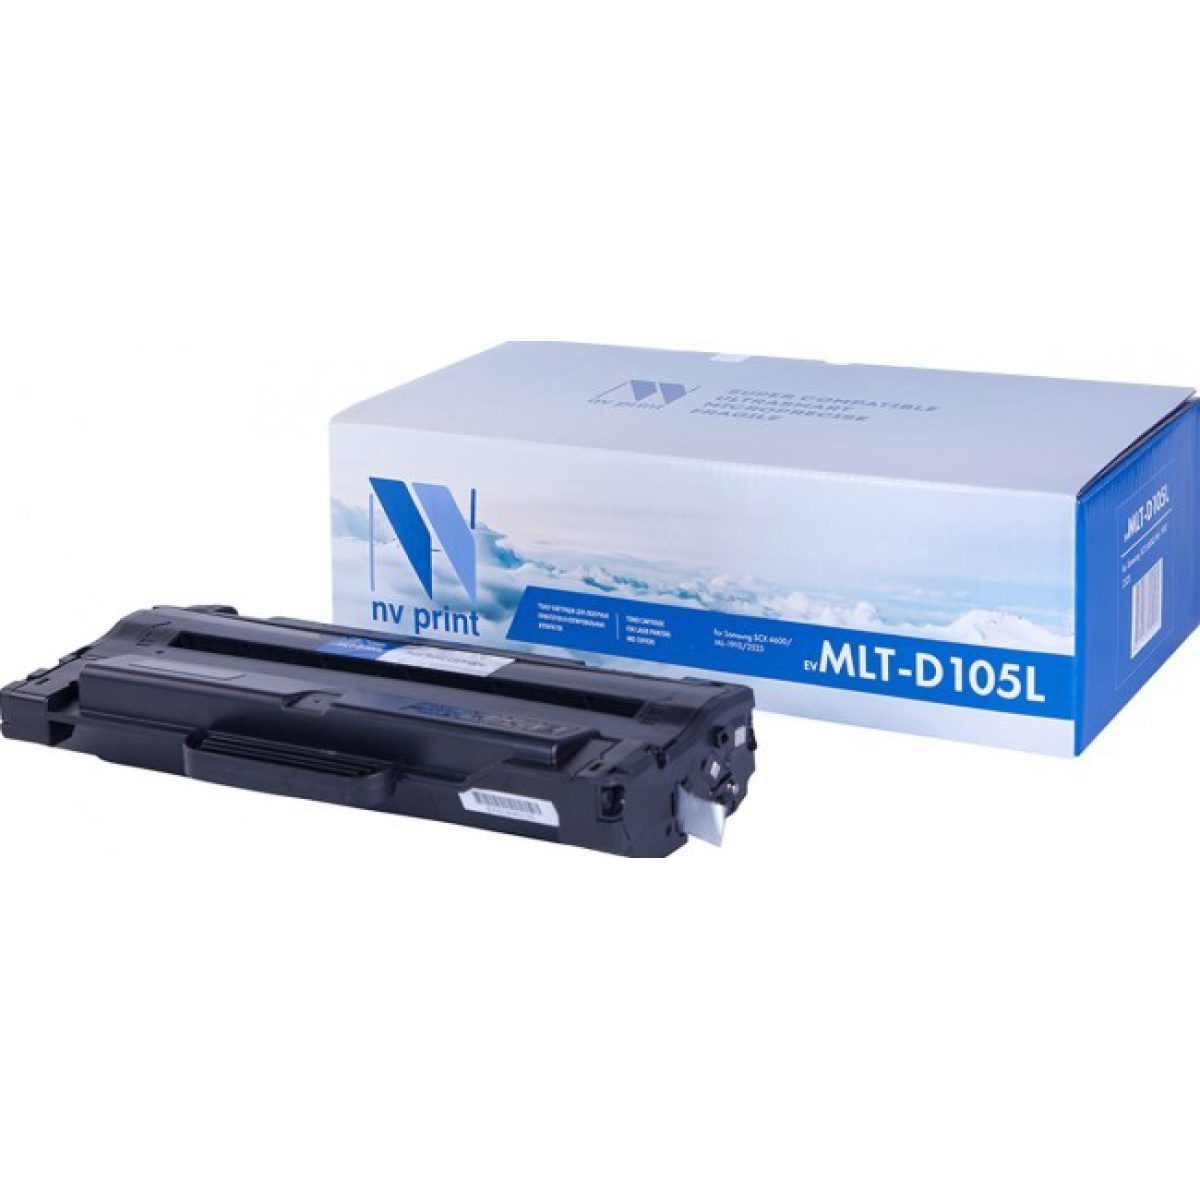 Купить картридж NV Print MLT-D105L черный по адекватной цене — Digit-Mall